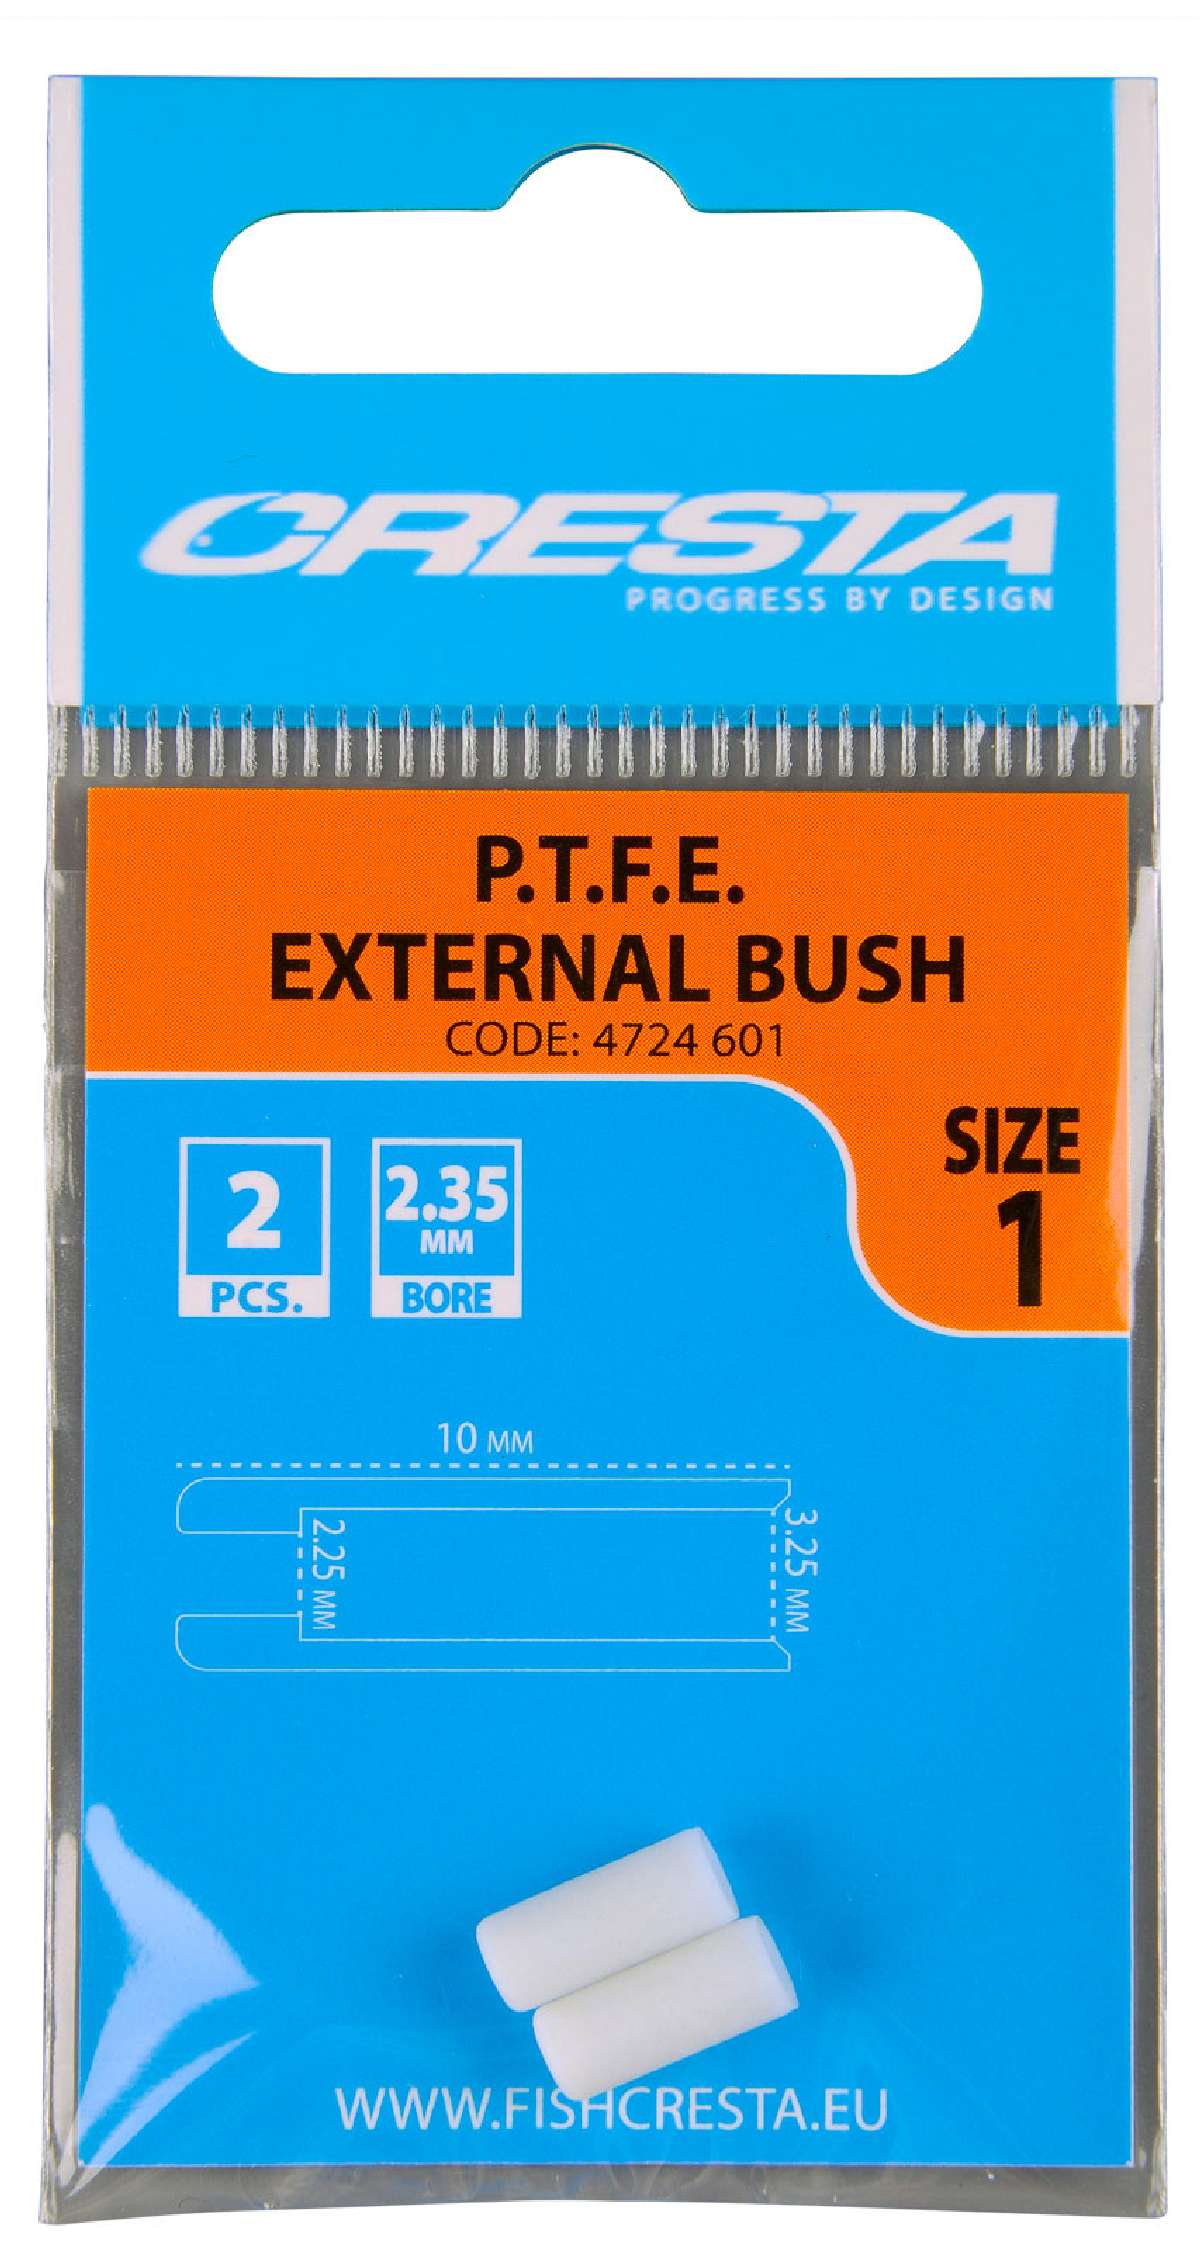 Cresta Ptfe Bush External Size 1 / 2.35 mm